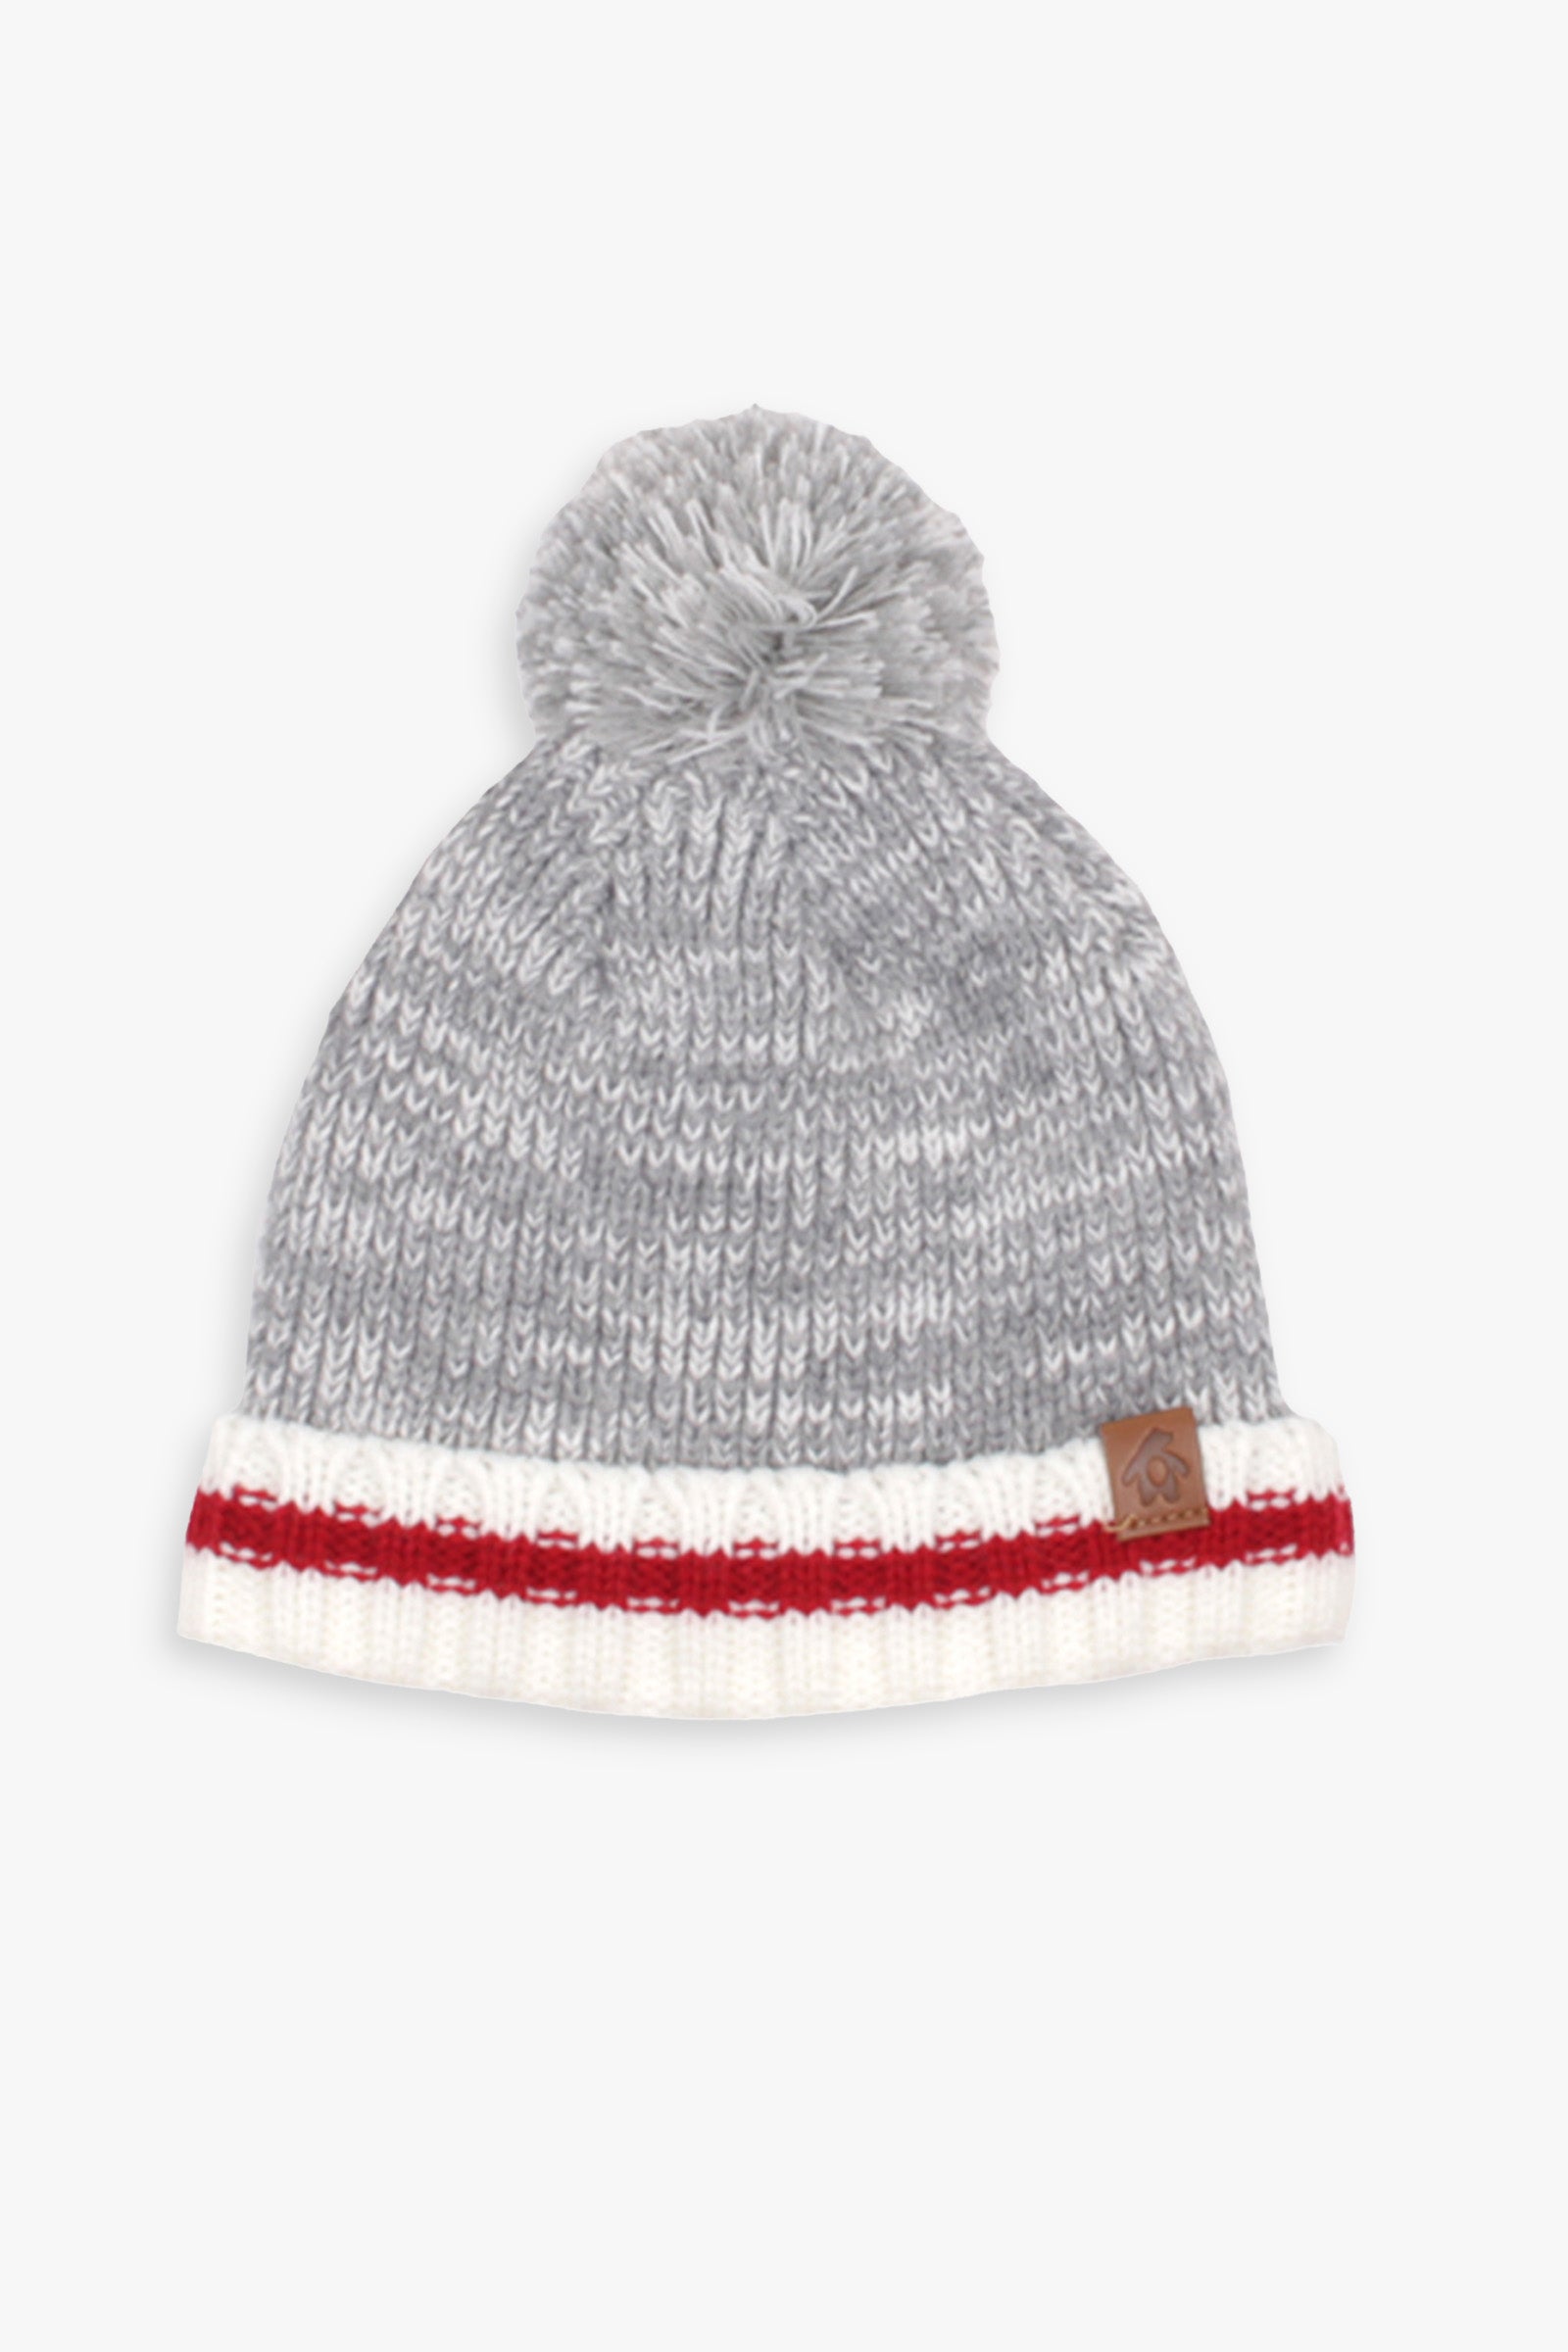 Snugabye Baby Unisex Grey Rib Knit Pom-Pom Winter Toque Hat